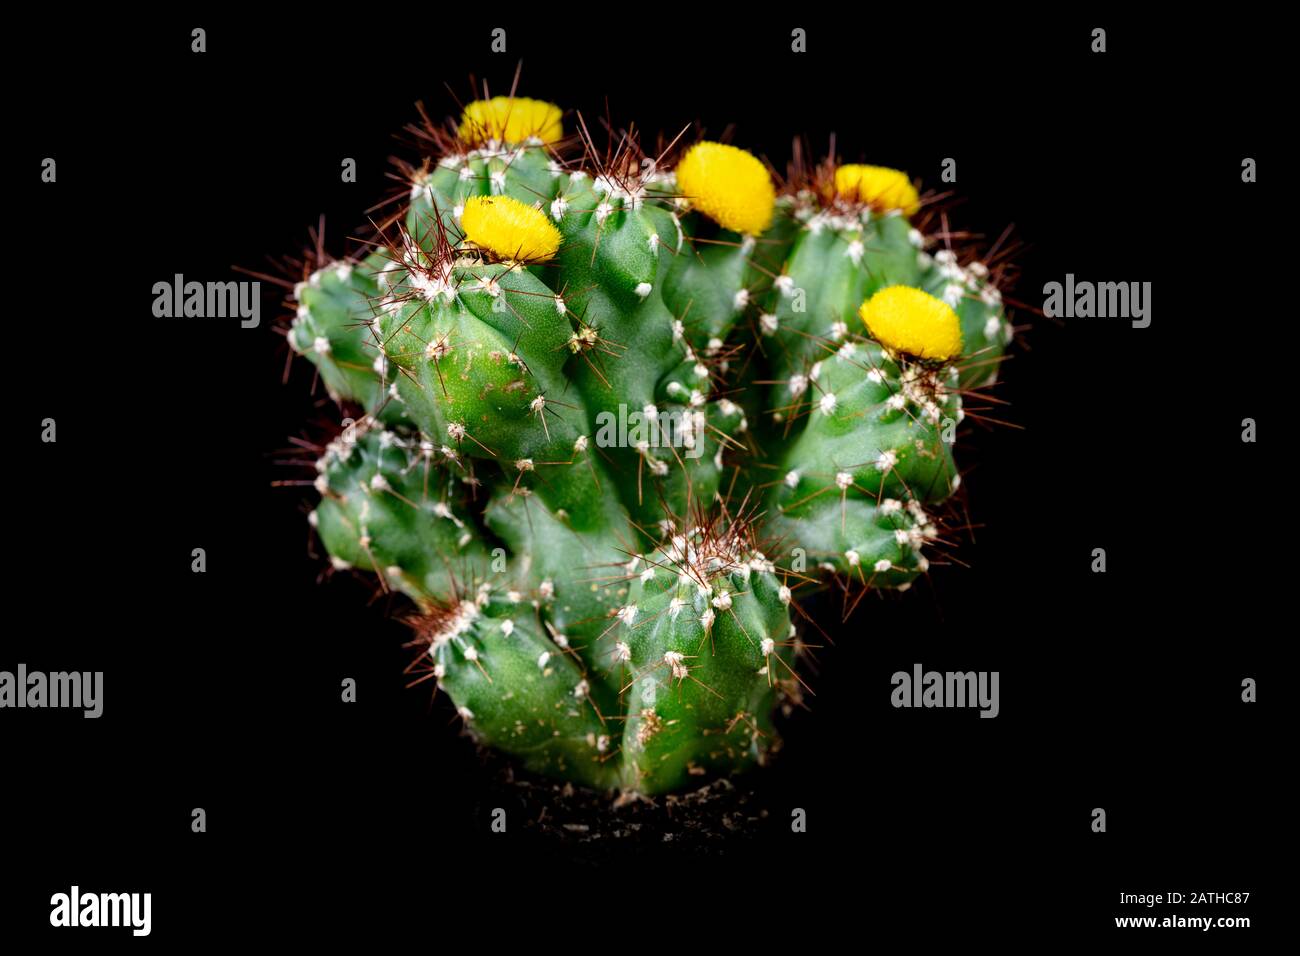 Cactus Cereus Peruvianus Monstrosus in front of black background, yellow blossoms Stock Photo